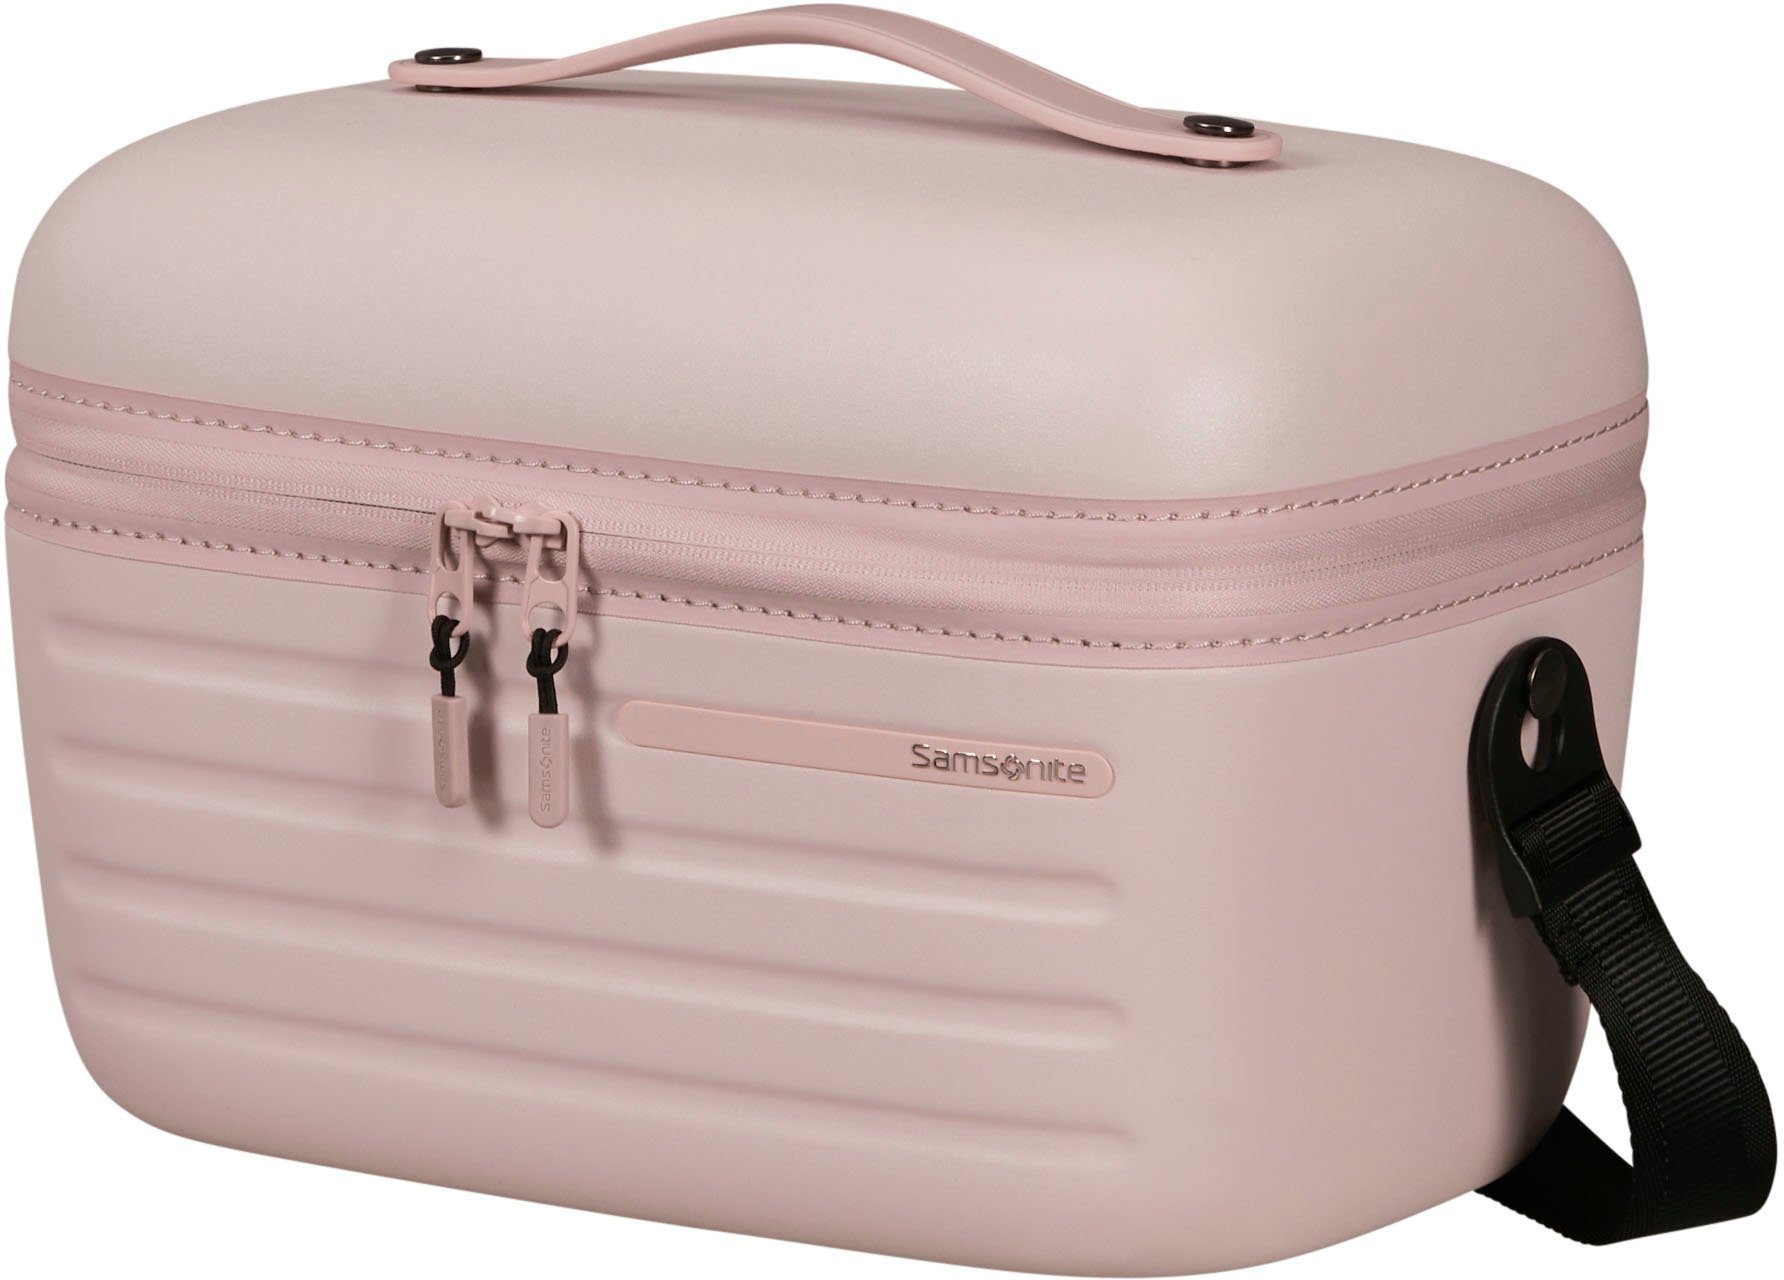 Samsonite Beautycase Kosmetikkoffer STACKD, Kosmetiktasche Reisekosmetiktasche Beauty-Bag geräumig und praktisch